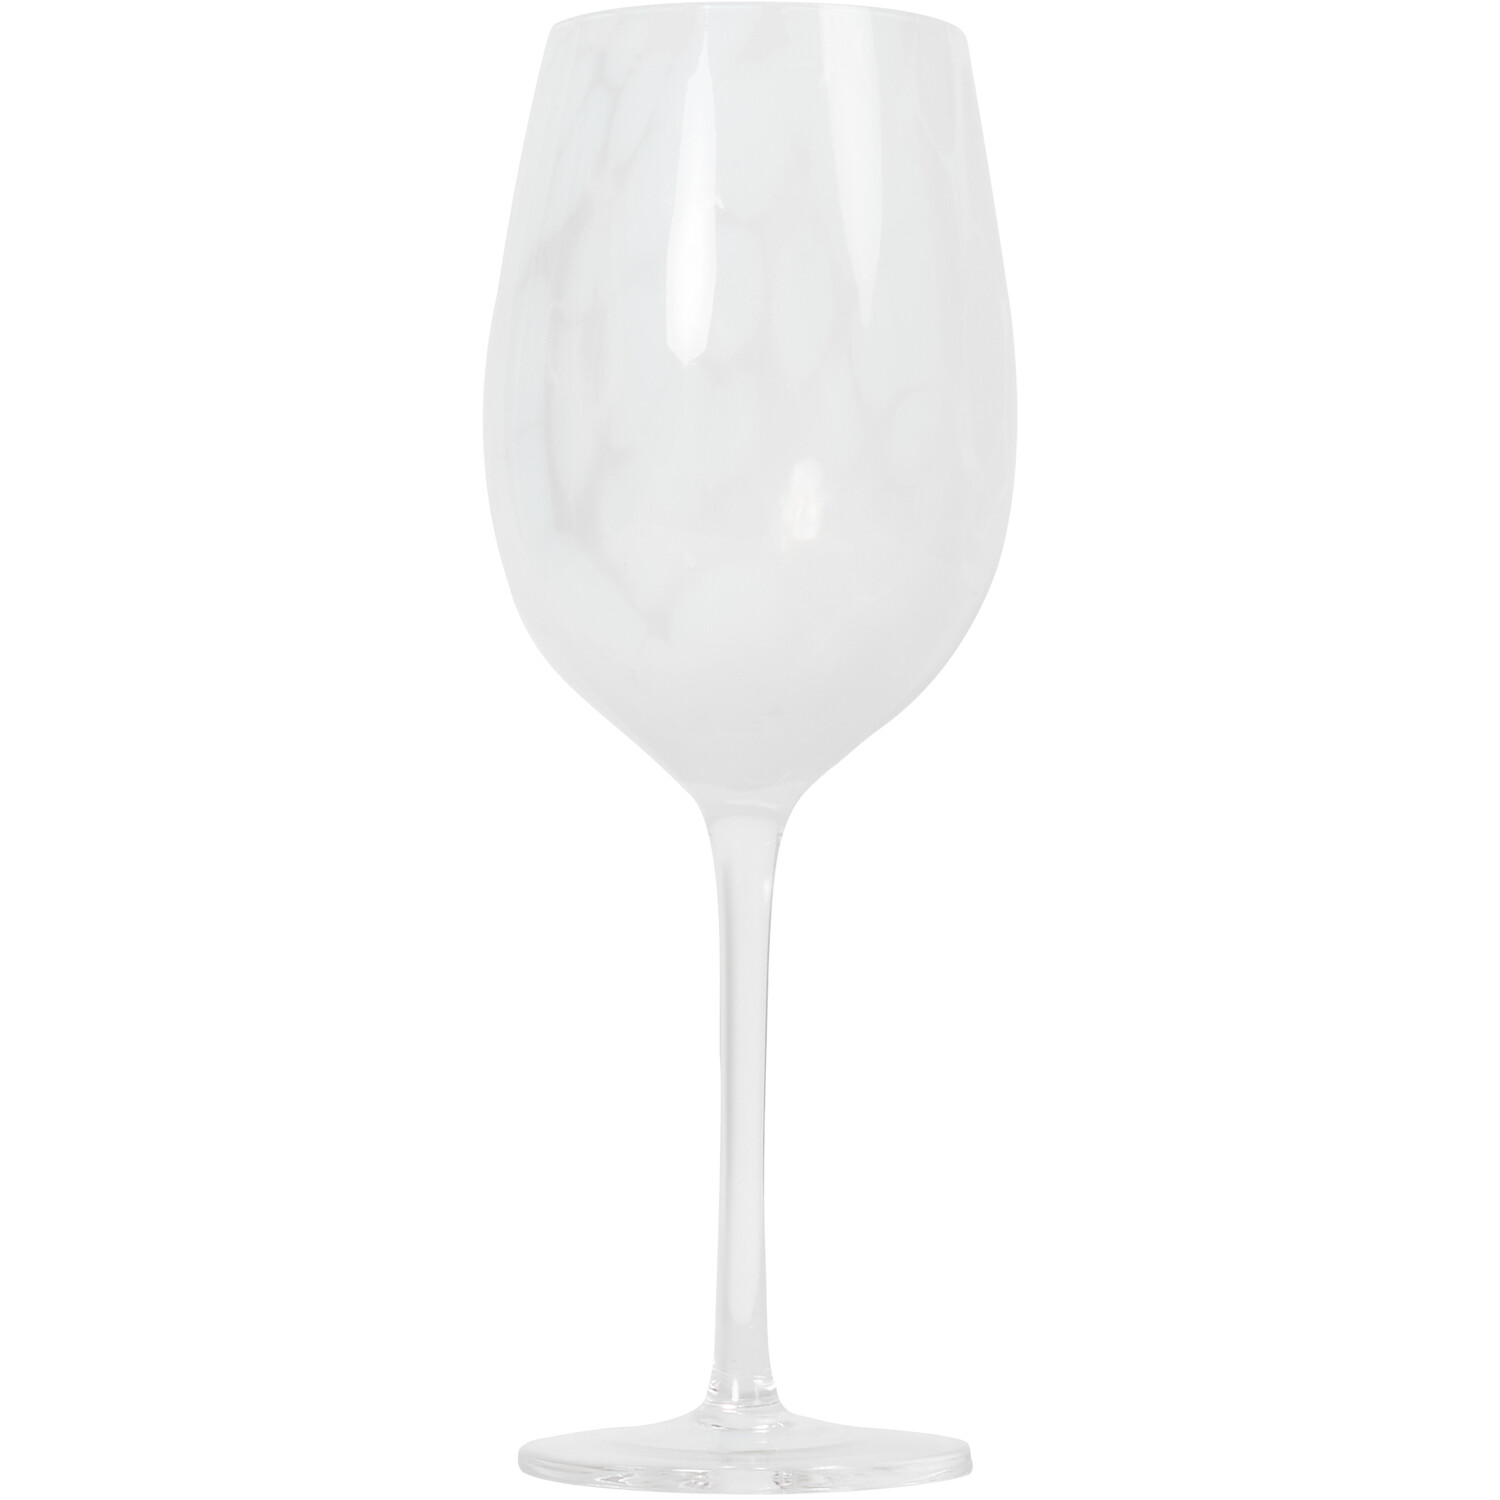 Confetti Wine Glass - White Image 1